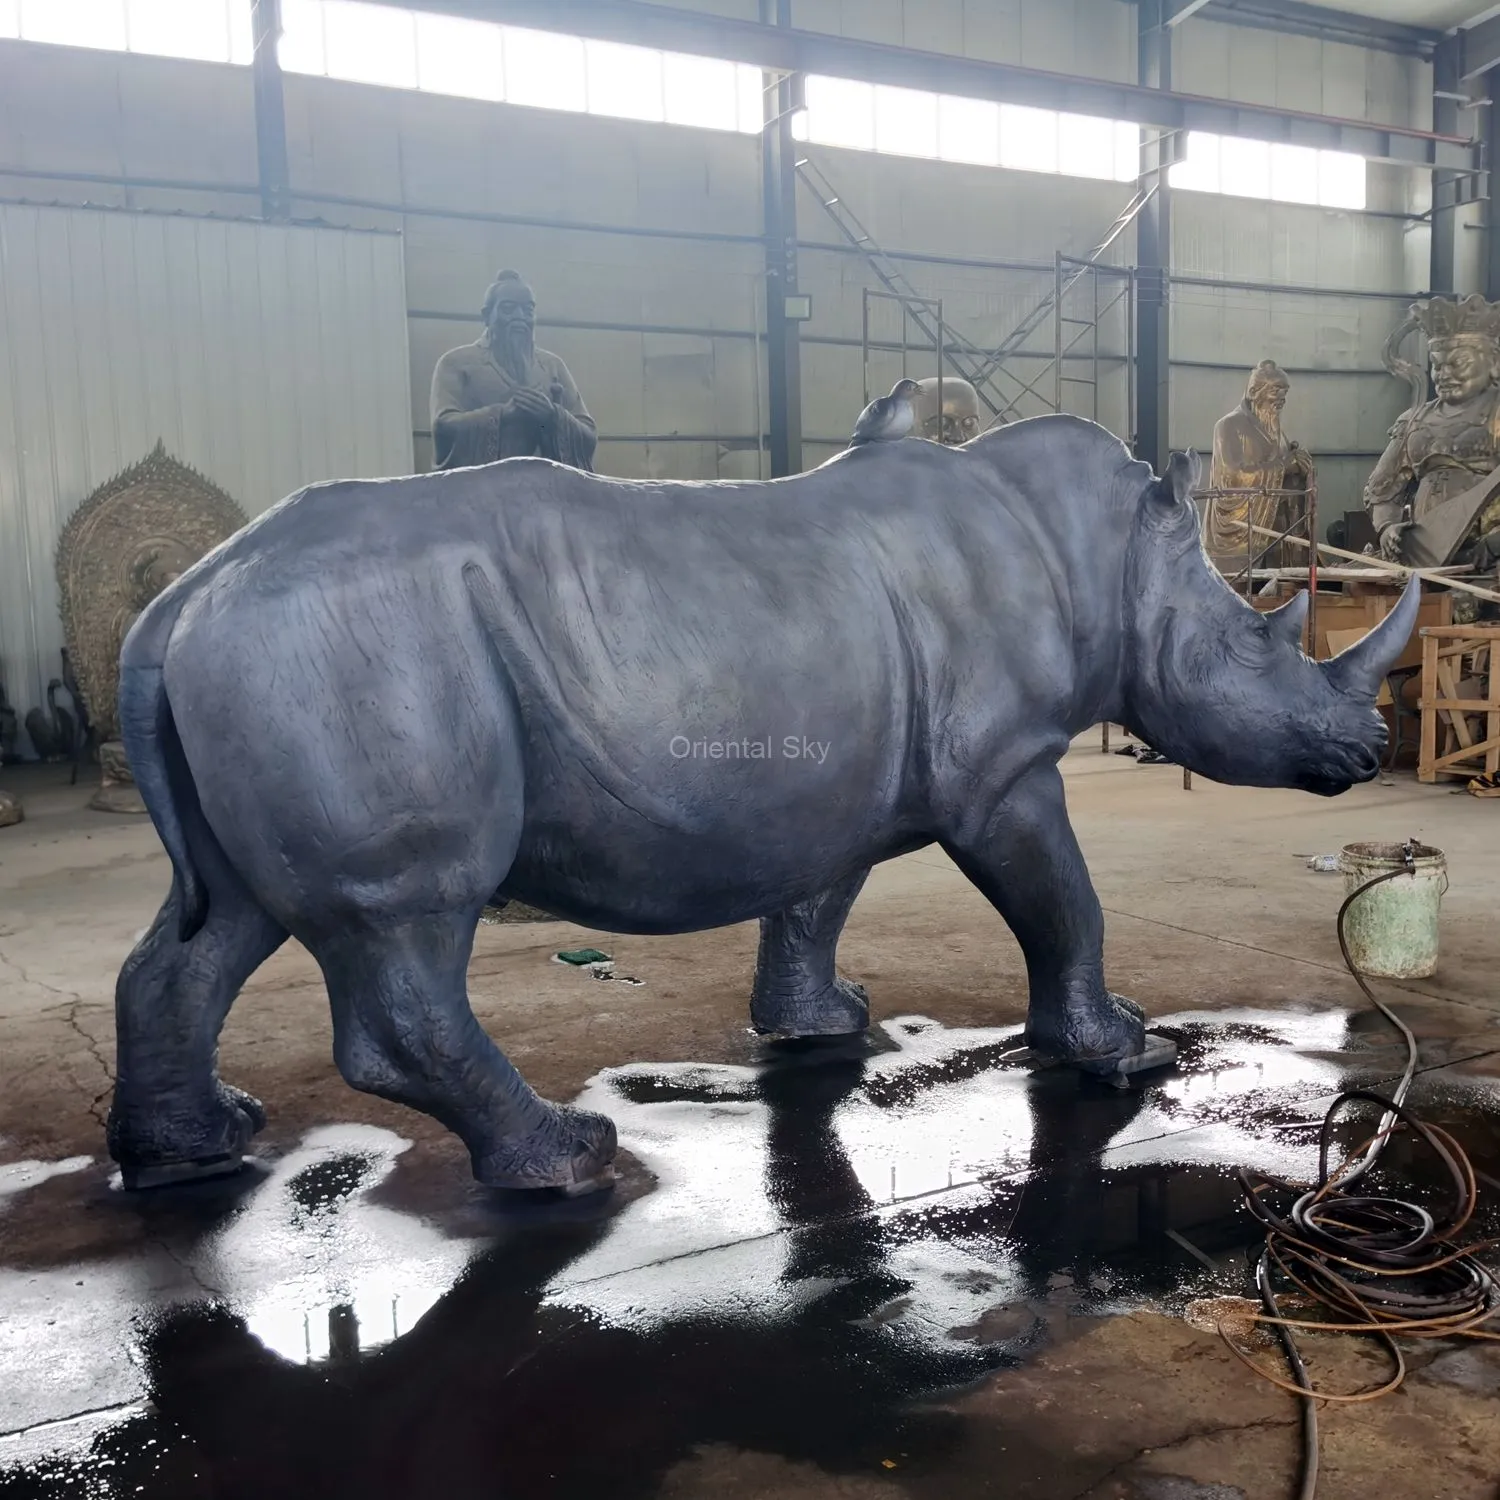 Скульптура животного сада металла на открытом воздухе в натуральную величину бронзовой статуи носорога большая